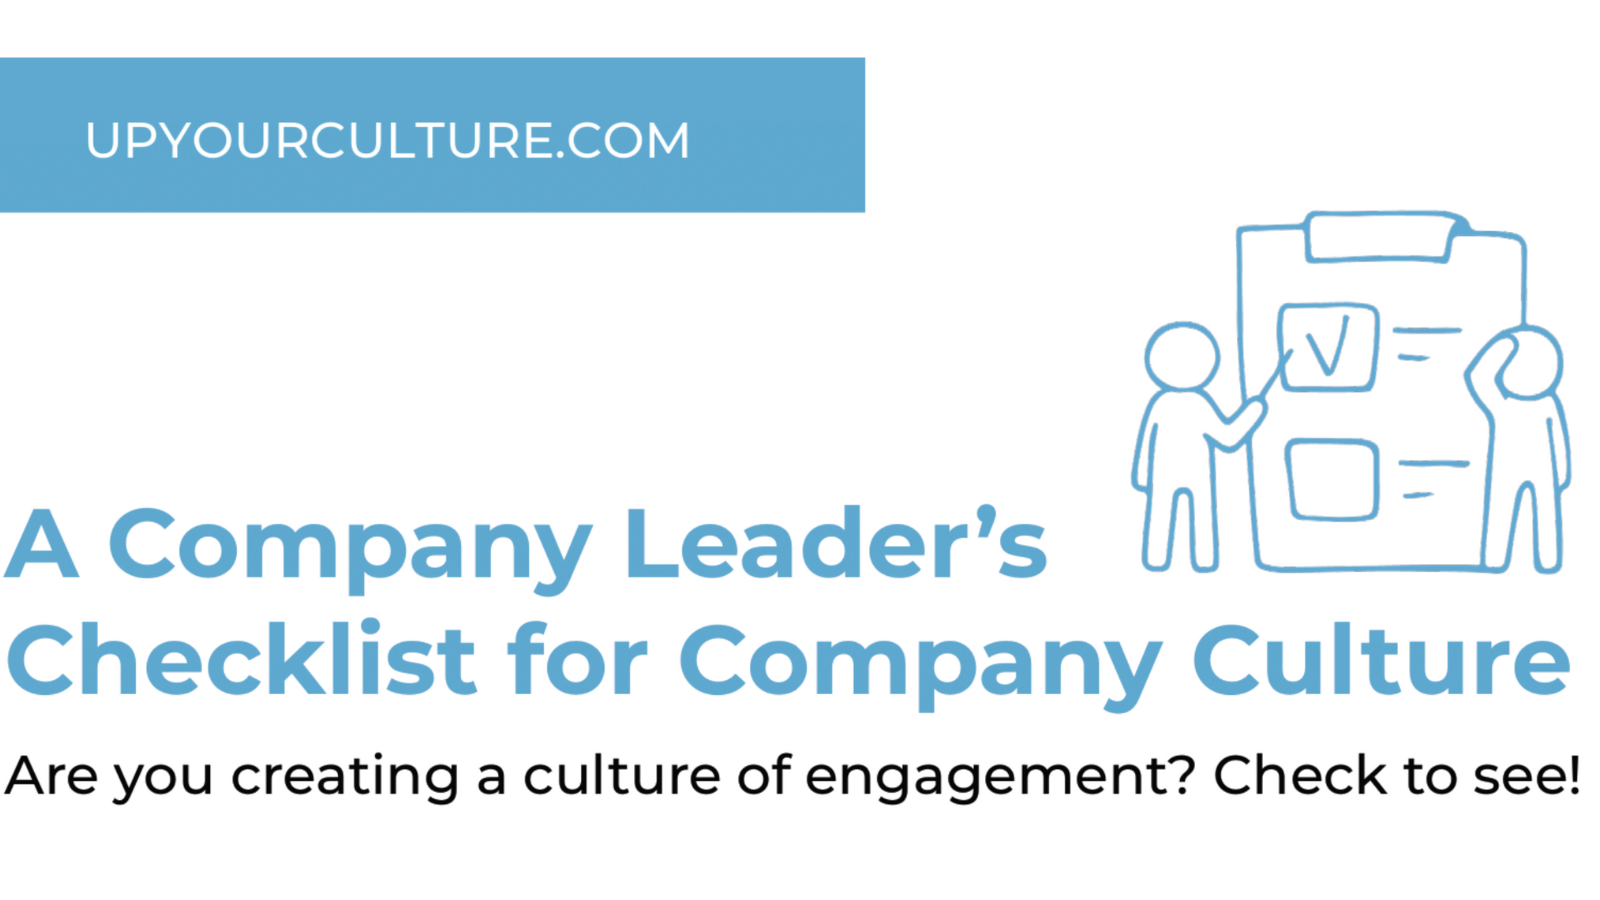 [CHECKLIST] A Company Leader's Checklist for Company Culture